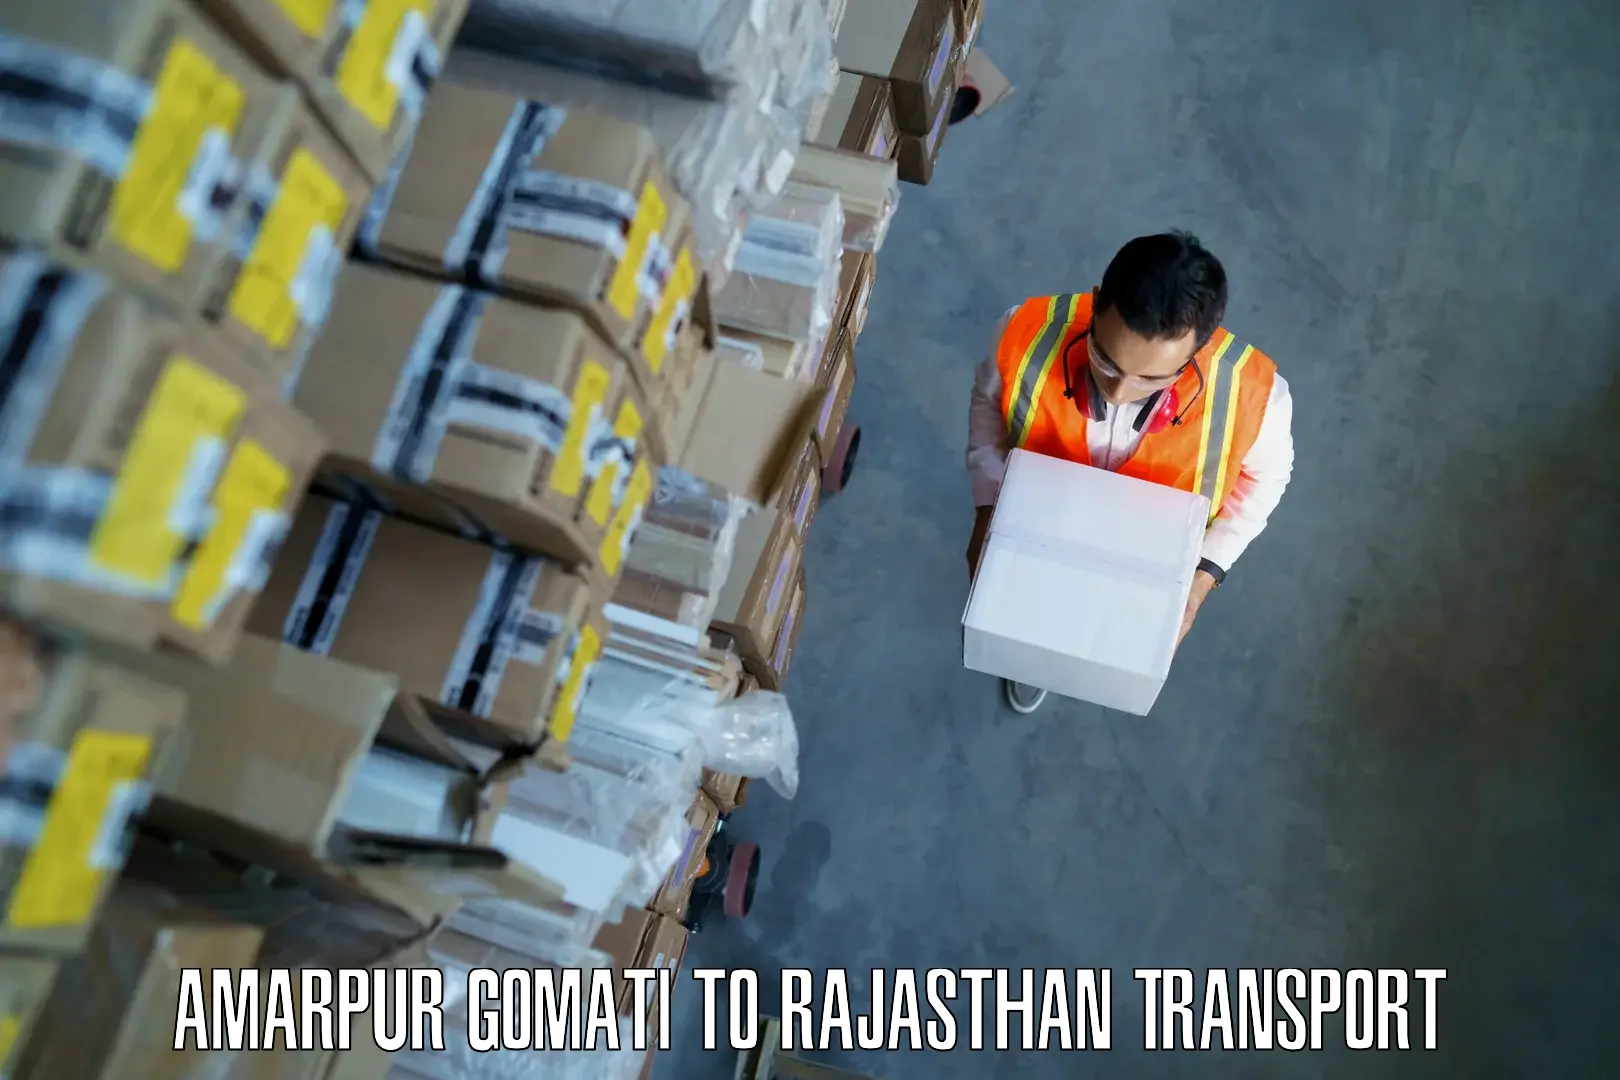 Part load transport service in India Amarpur Gomati to Udaipurwati